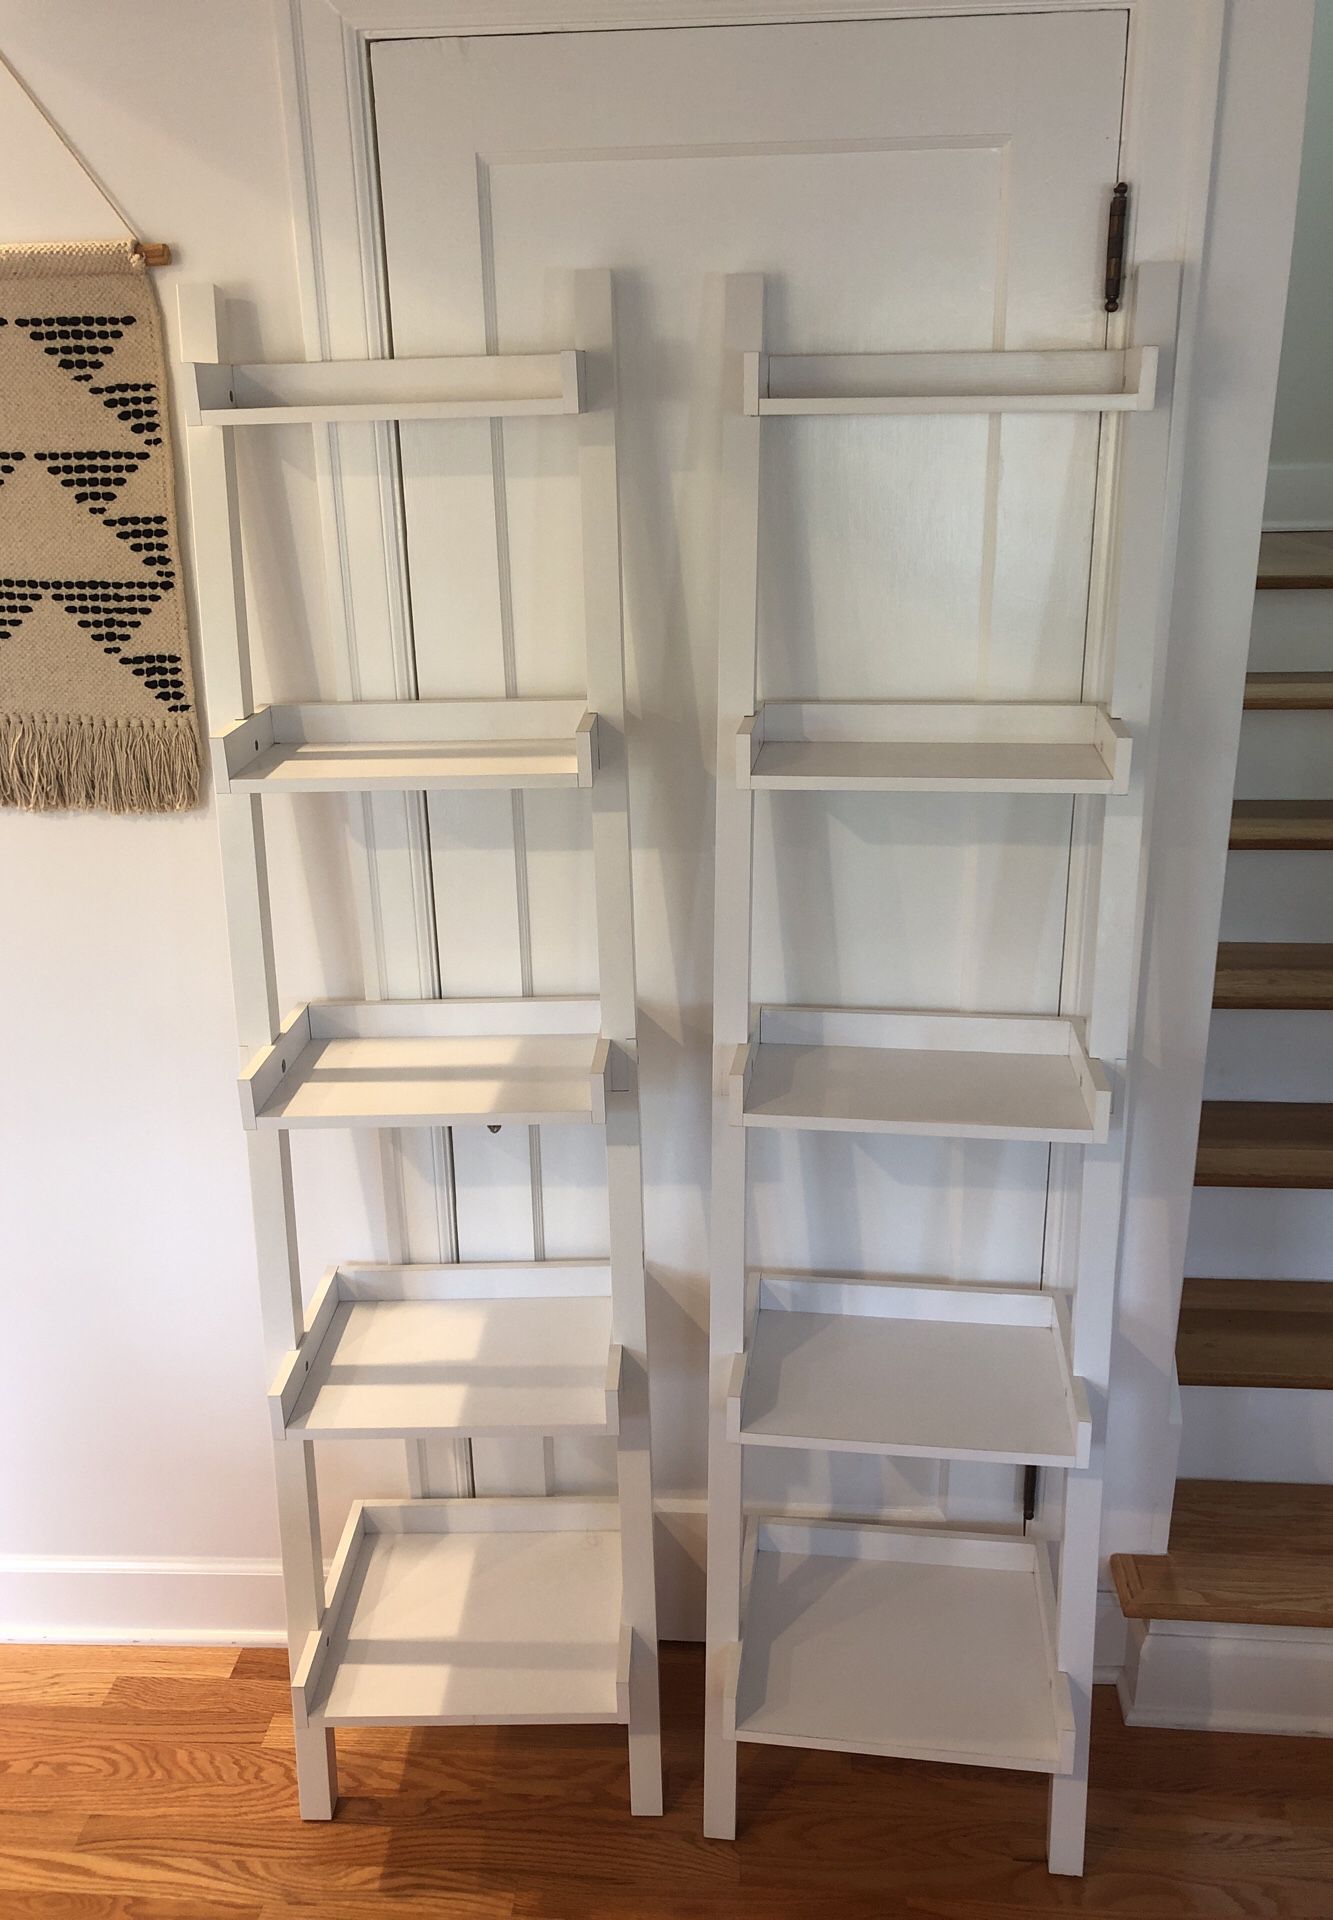 Leaning Bookshelves - White Shelves/Shelving